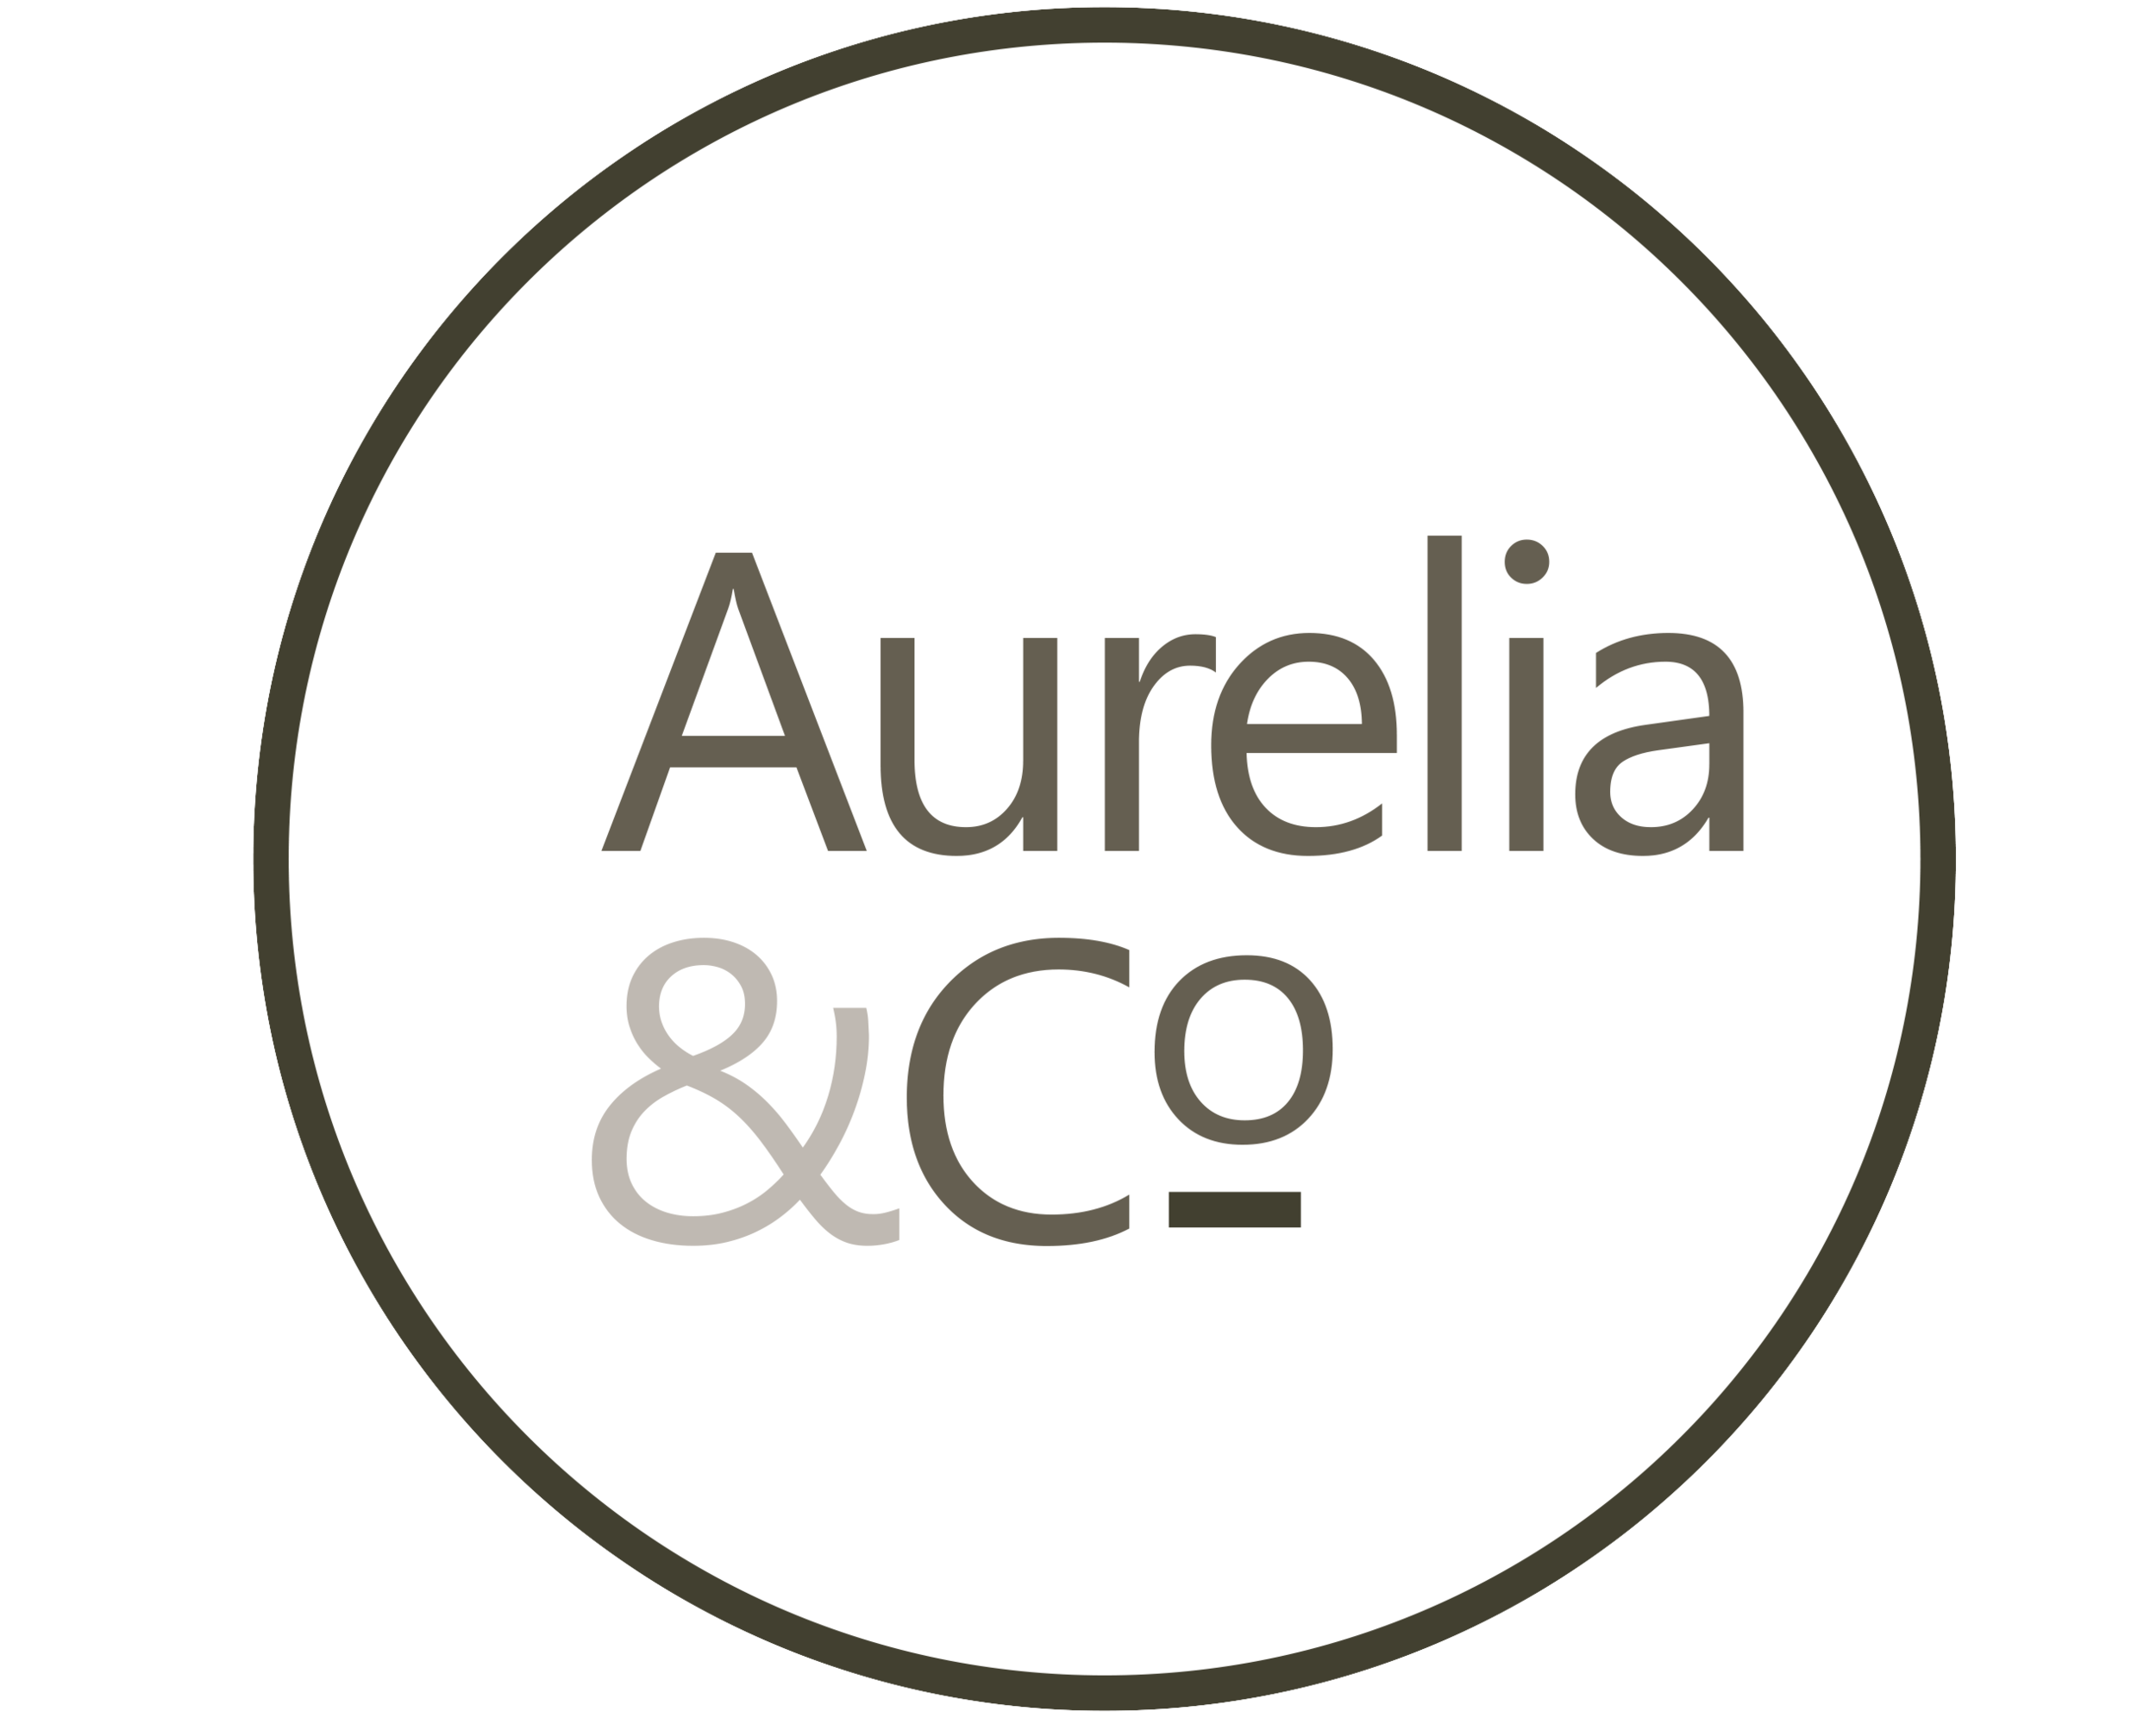 Aurelia & Co